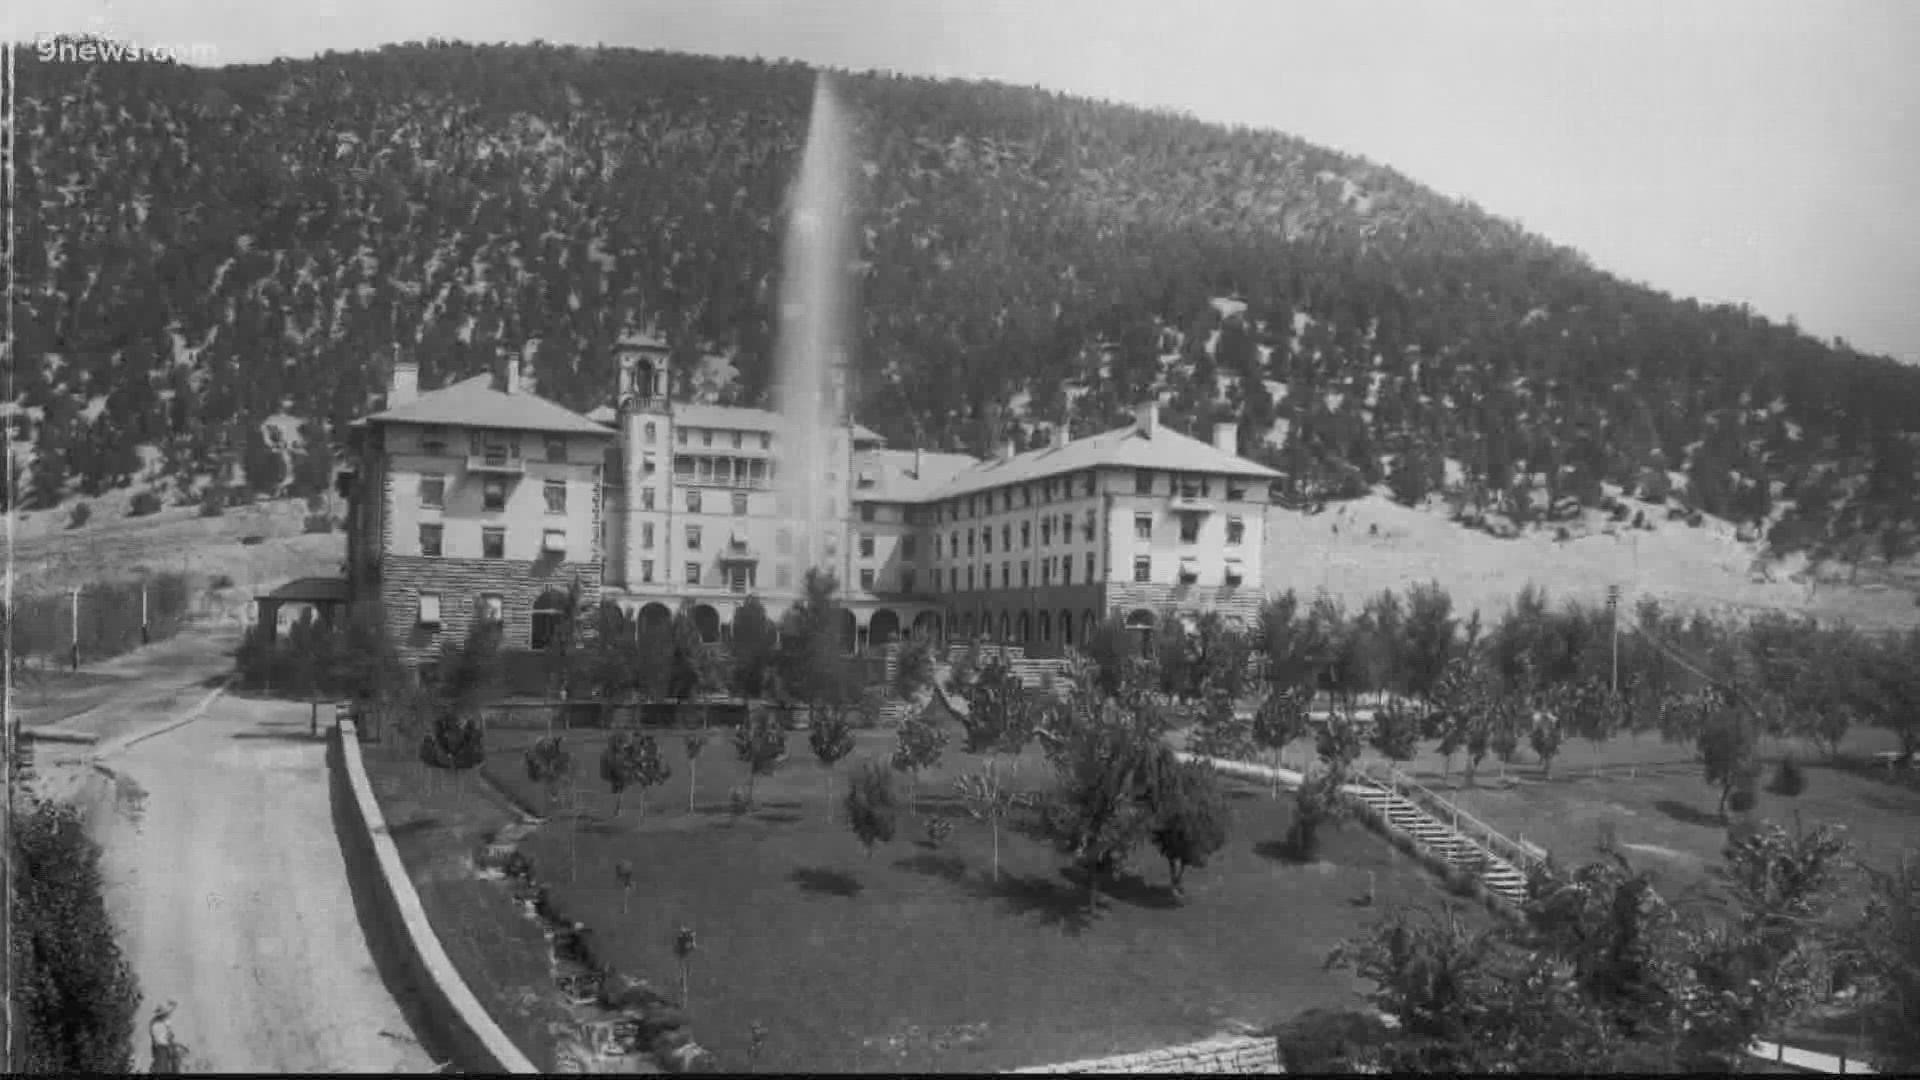 One of Colorado's spookiest places is Hotel Colorado.